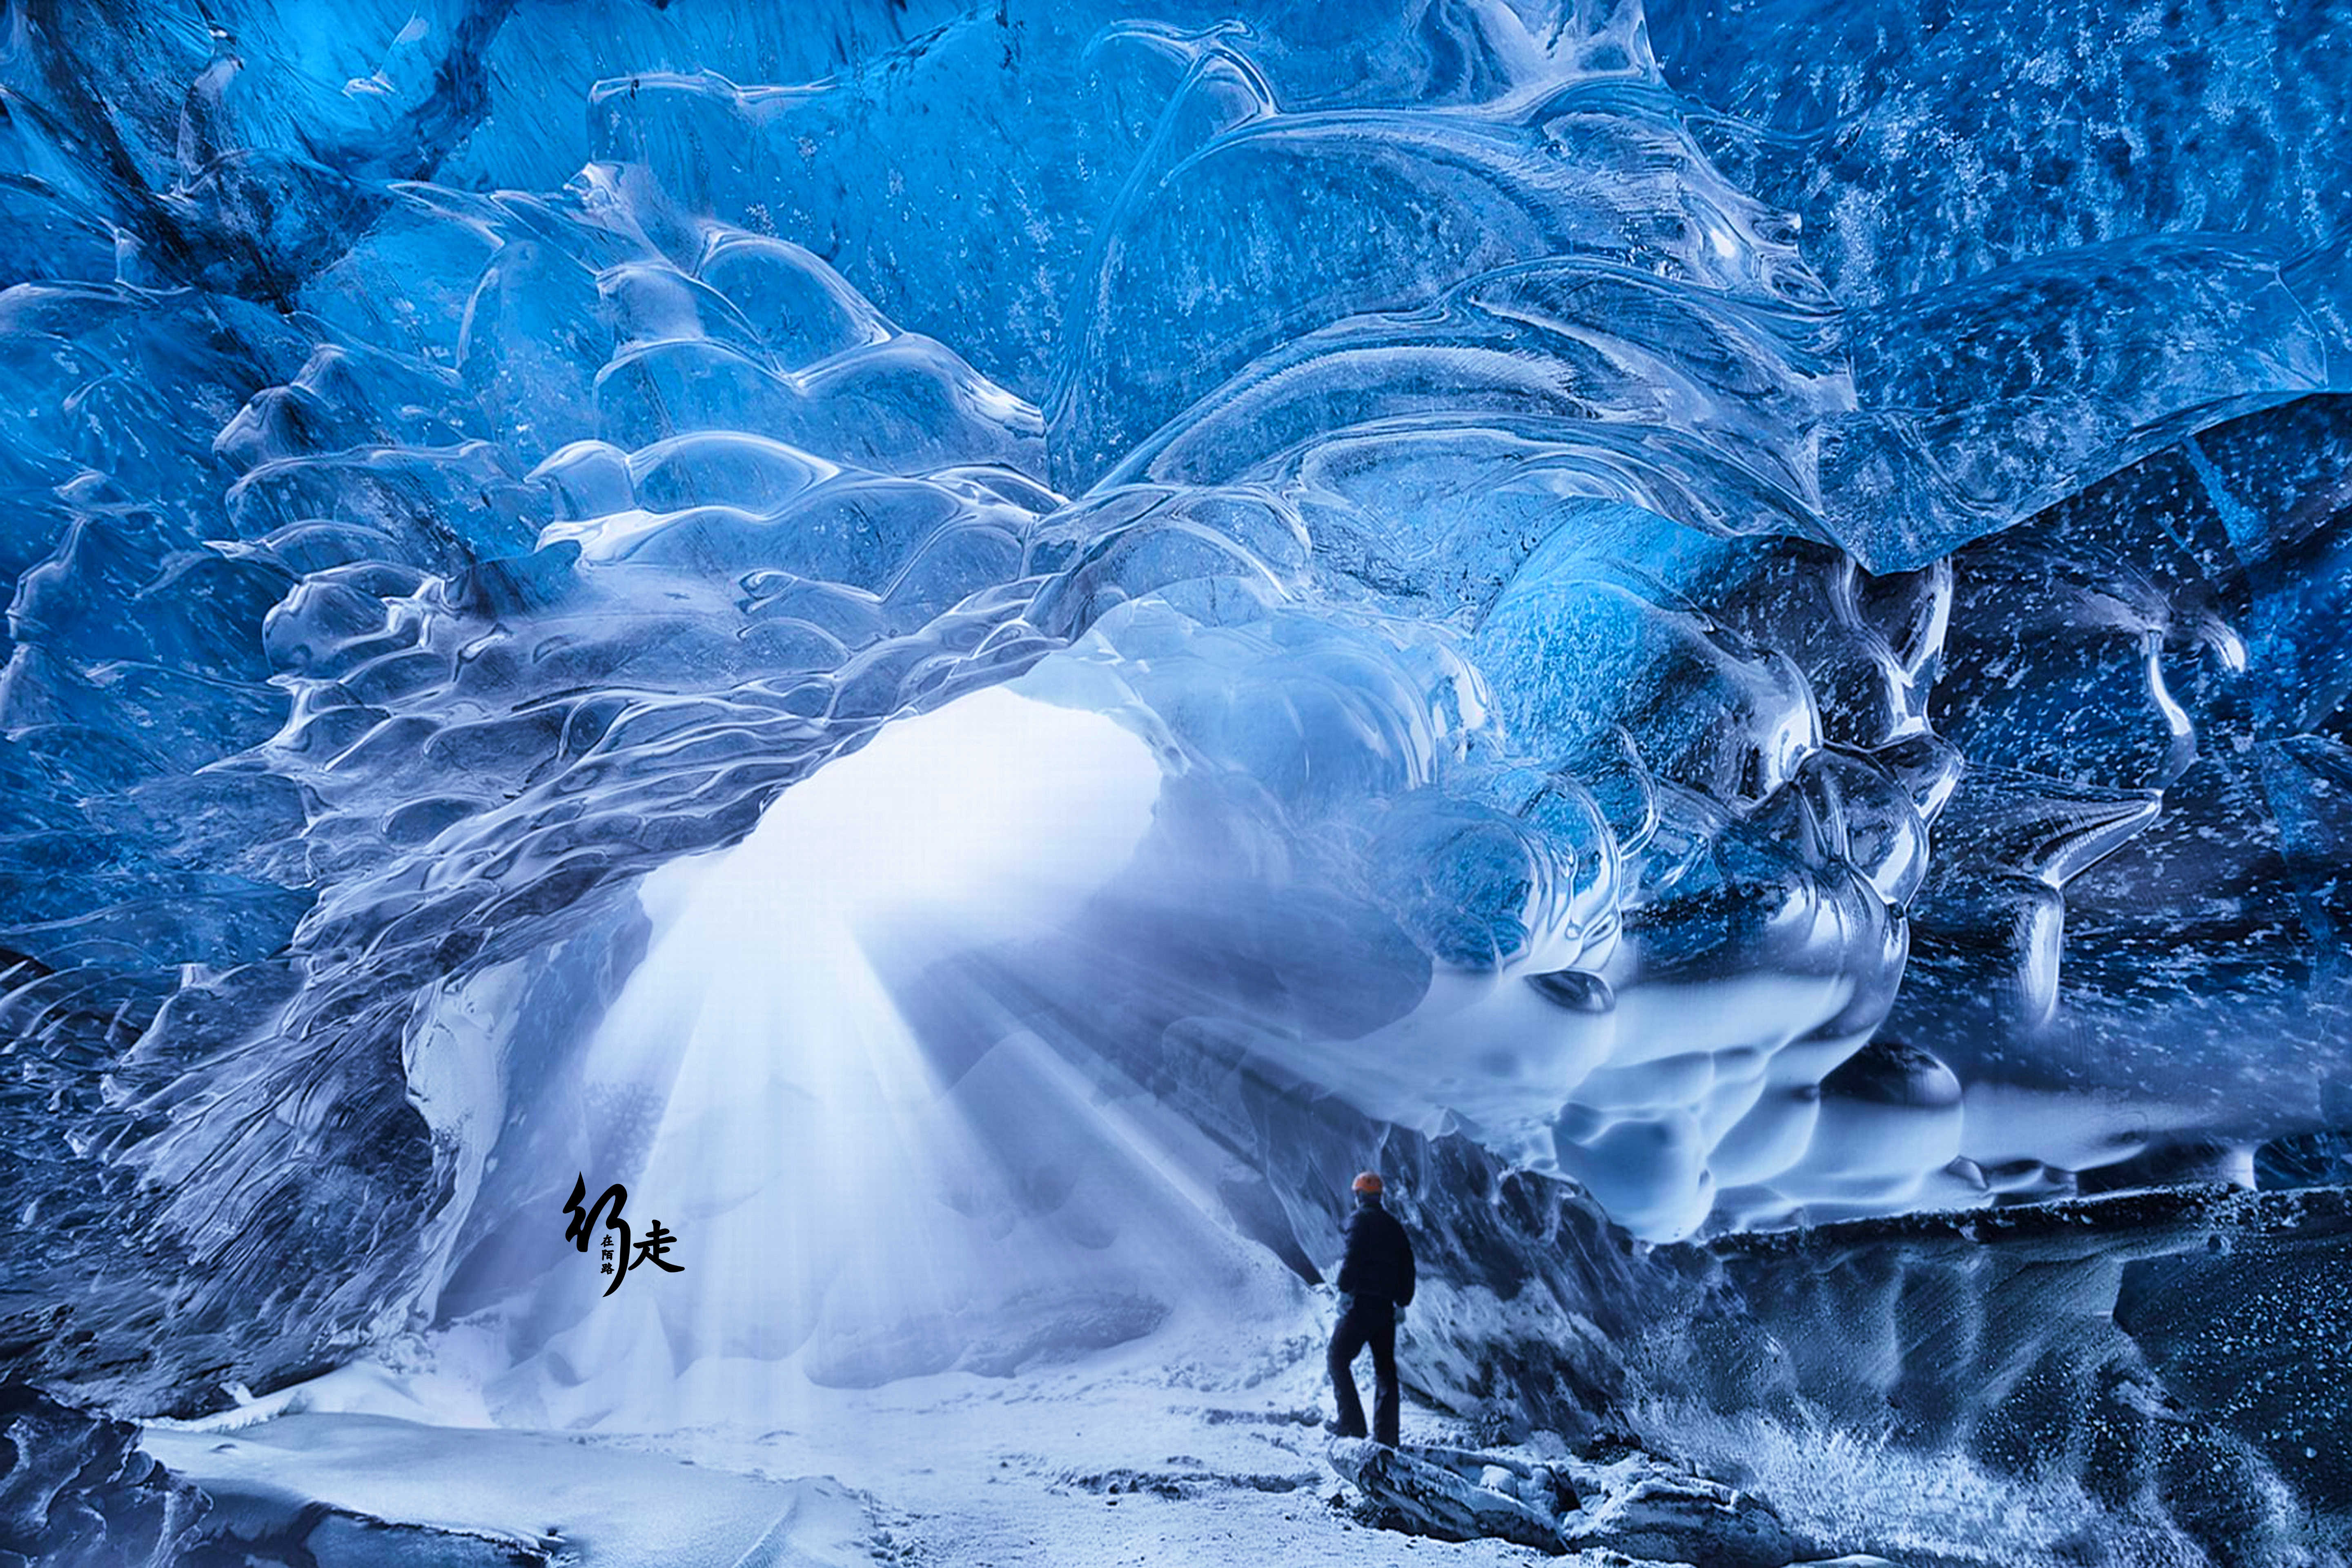 原创全球最长的冰洞洞口冰层万年不化洞内却只要穿短袖